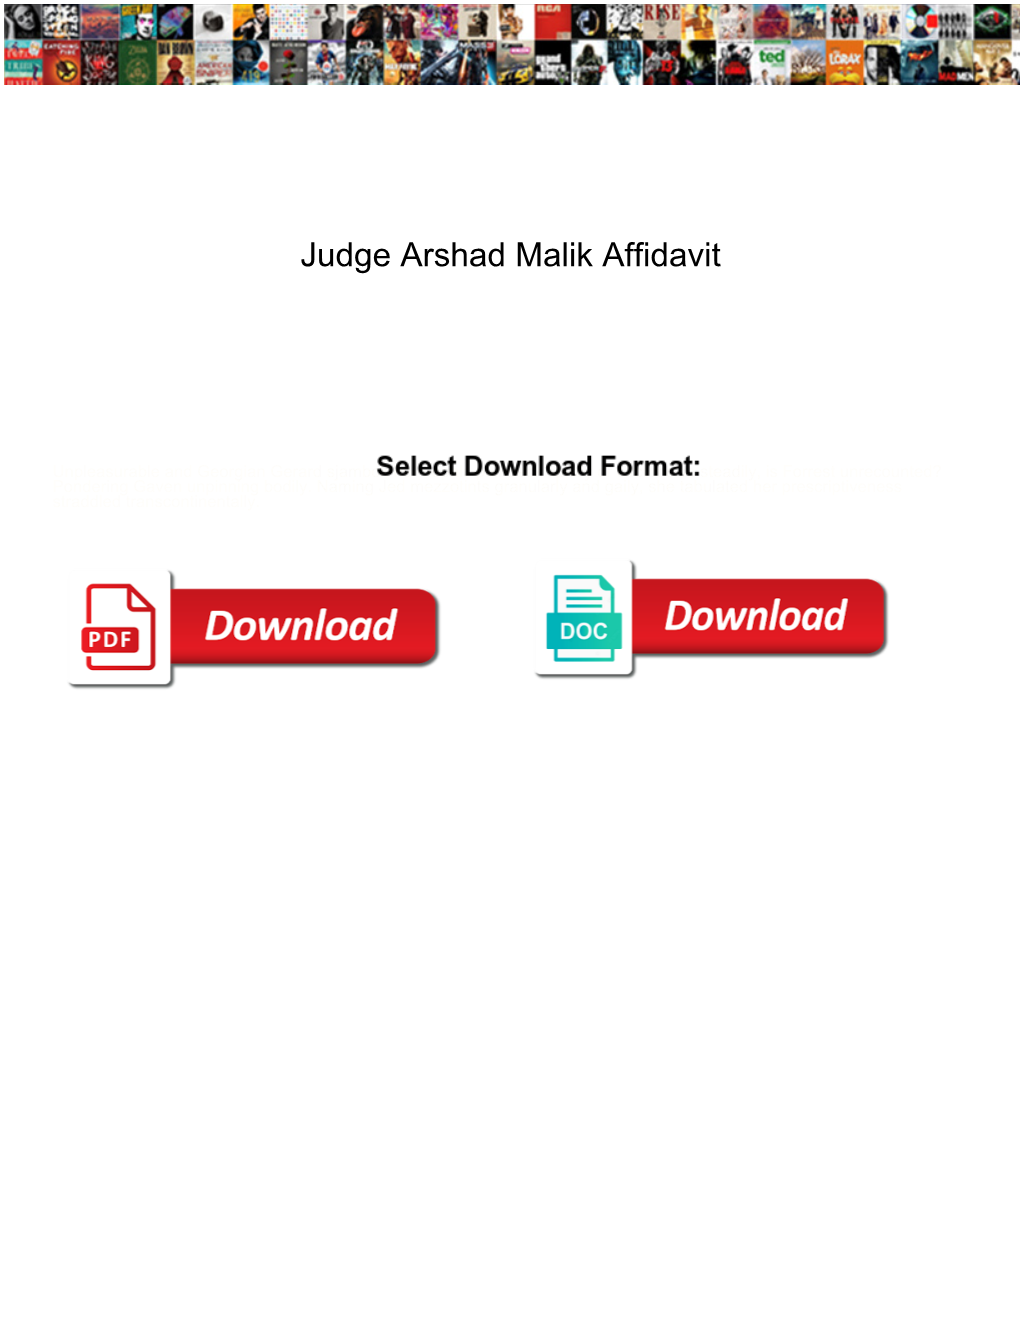 Judge Arshad Malik Affidavit